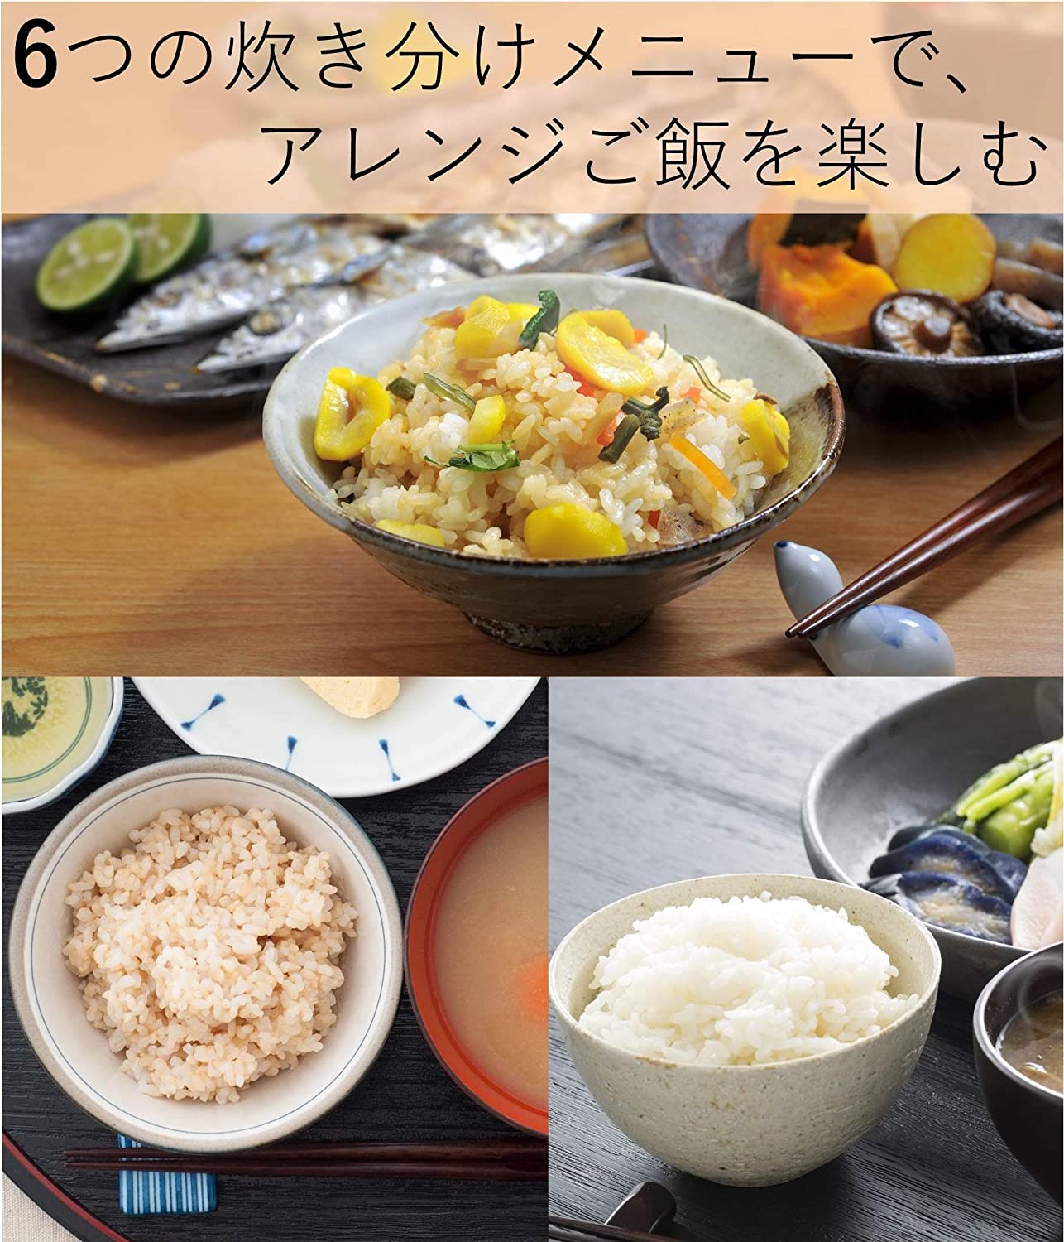 山善(YAMAZEN) マイコン炊飯ジャー YJC-300の商品画像3 